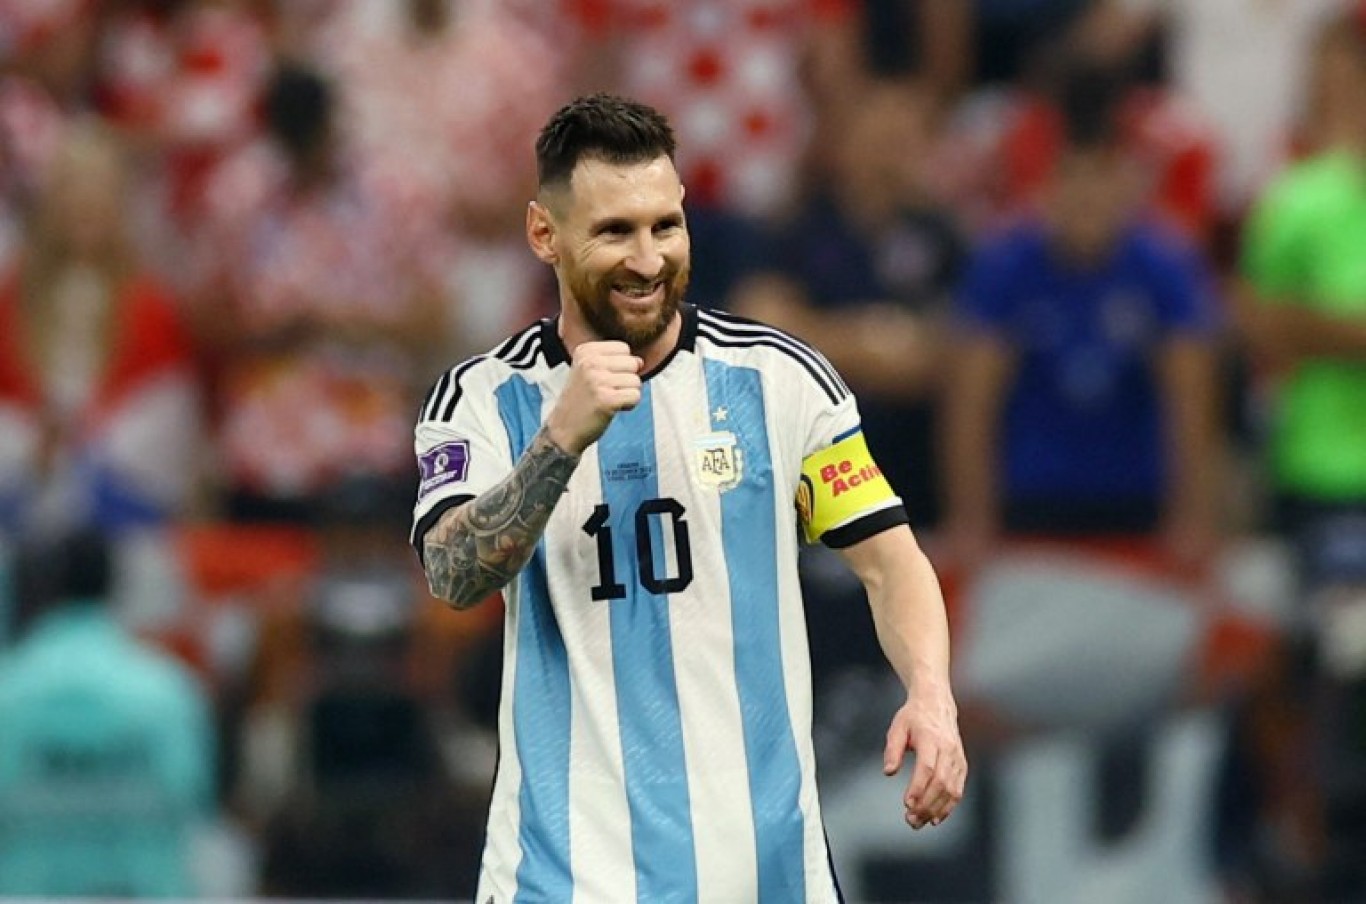 Lionel Messi tras alcanzar la final del Mundial: "Disfrutemos que vamos a dejar todo para tratar de llevarla"